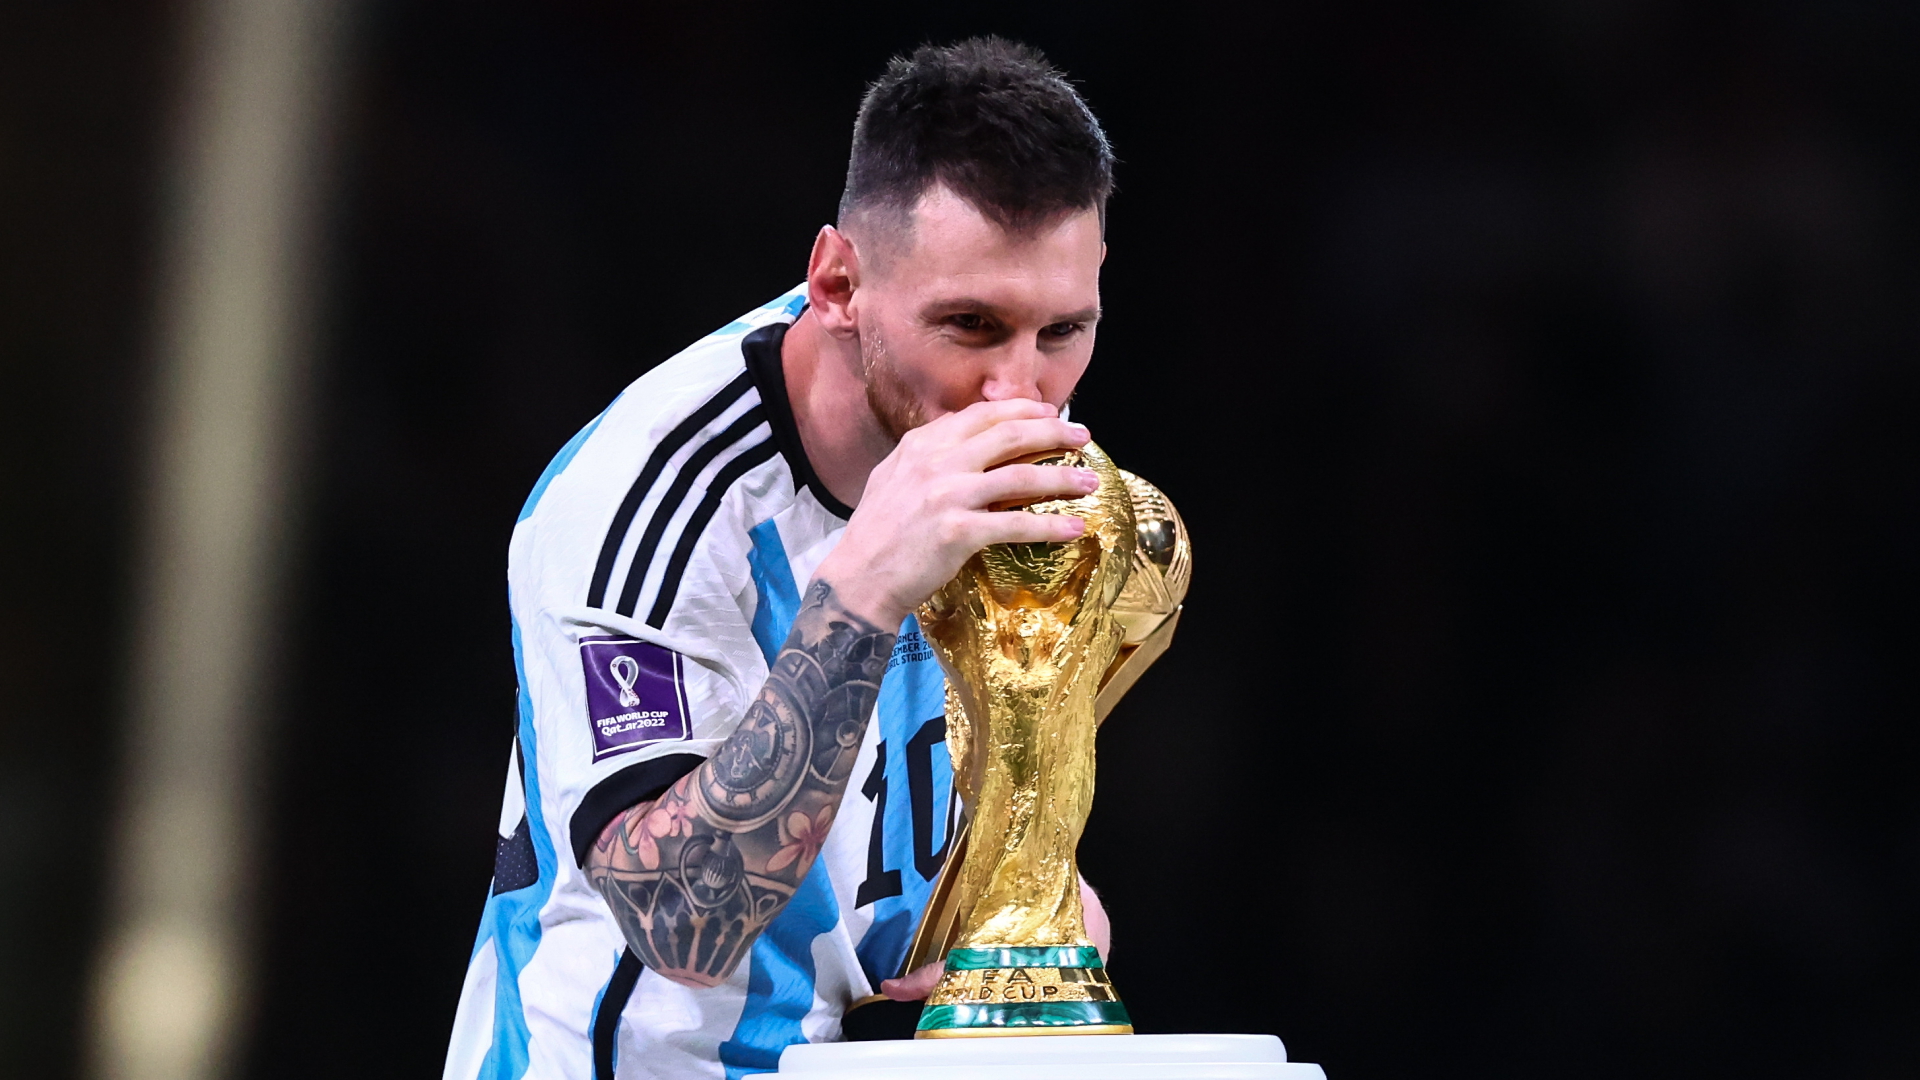 Lionel Messi küsst in Katar den WM-Pokal | dpa